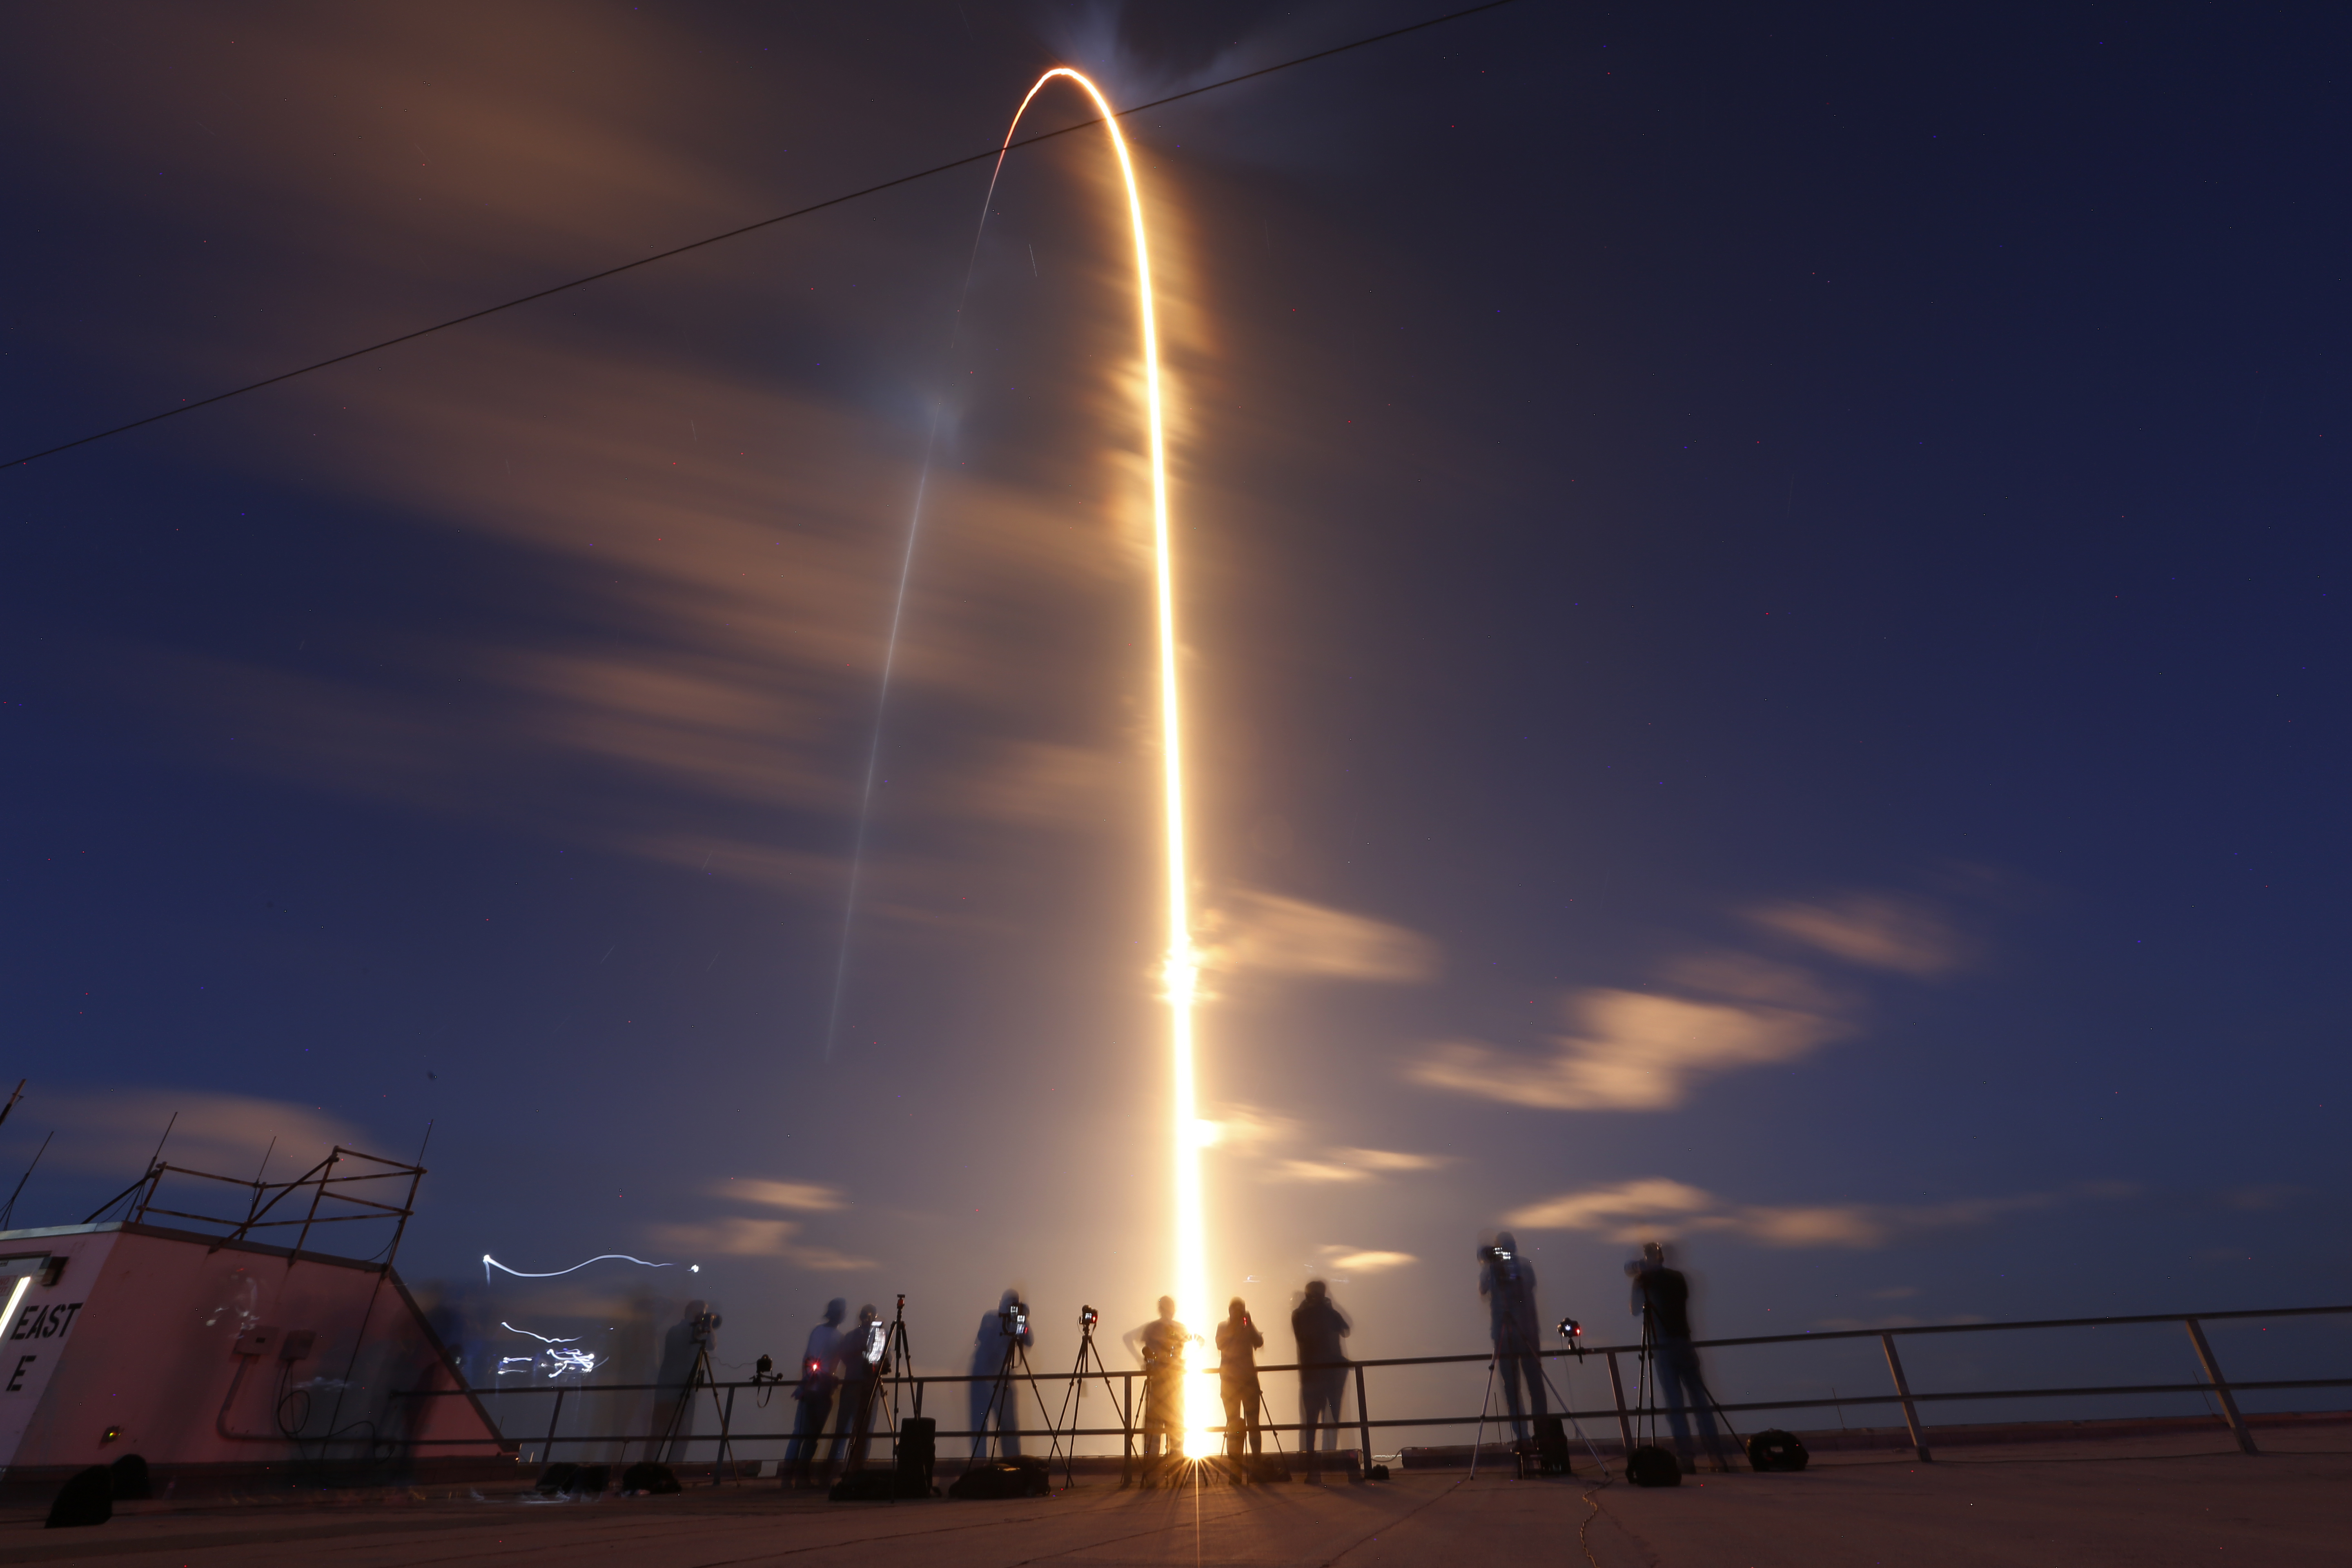 El cohete SpaceX Falcon 9 despega desde el Pad 39A en el Centro Espacial Kennedy en Cabo Cañaveral, Florida, el 15 de septiembre de 2021. (REUTERS/Joe Skipper)